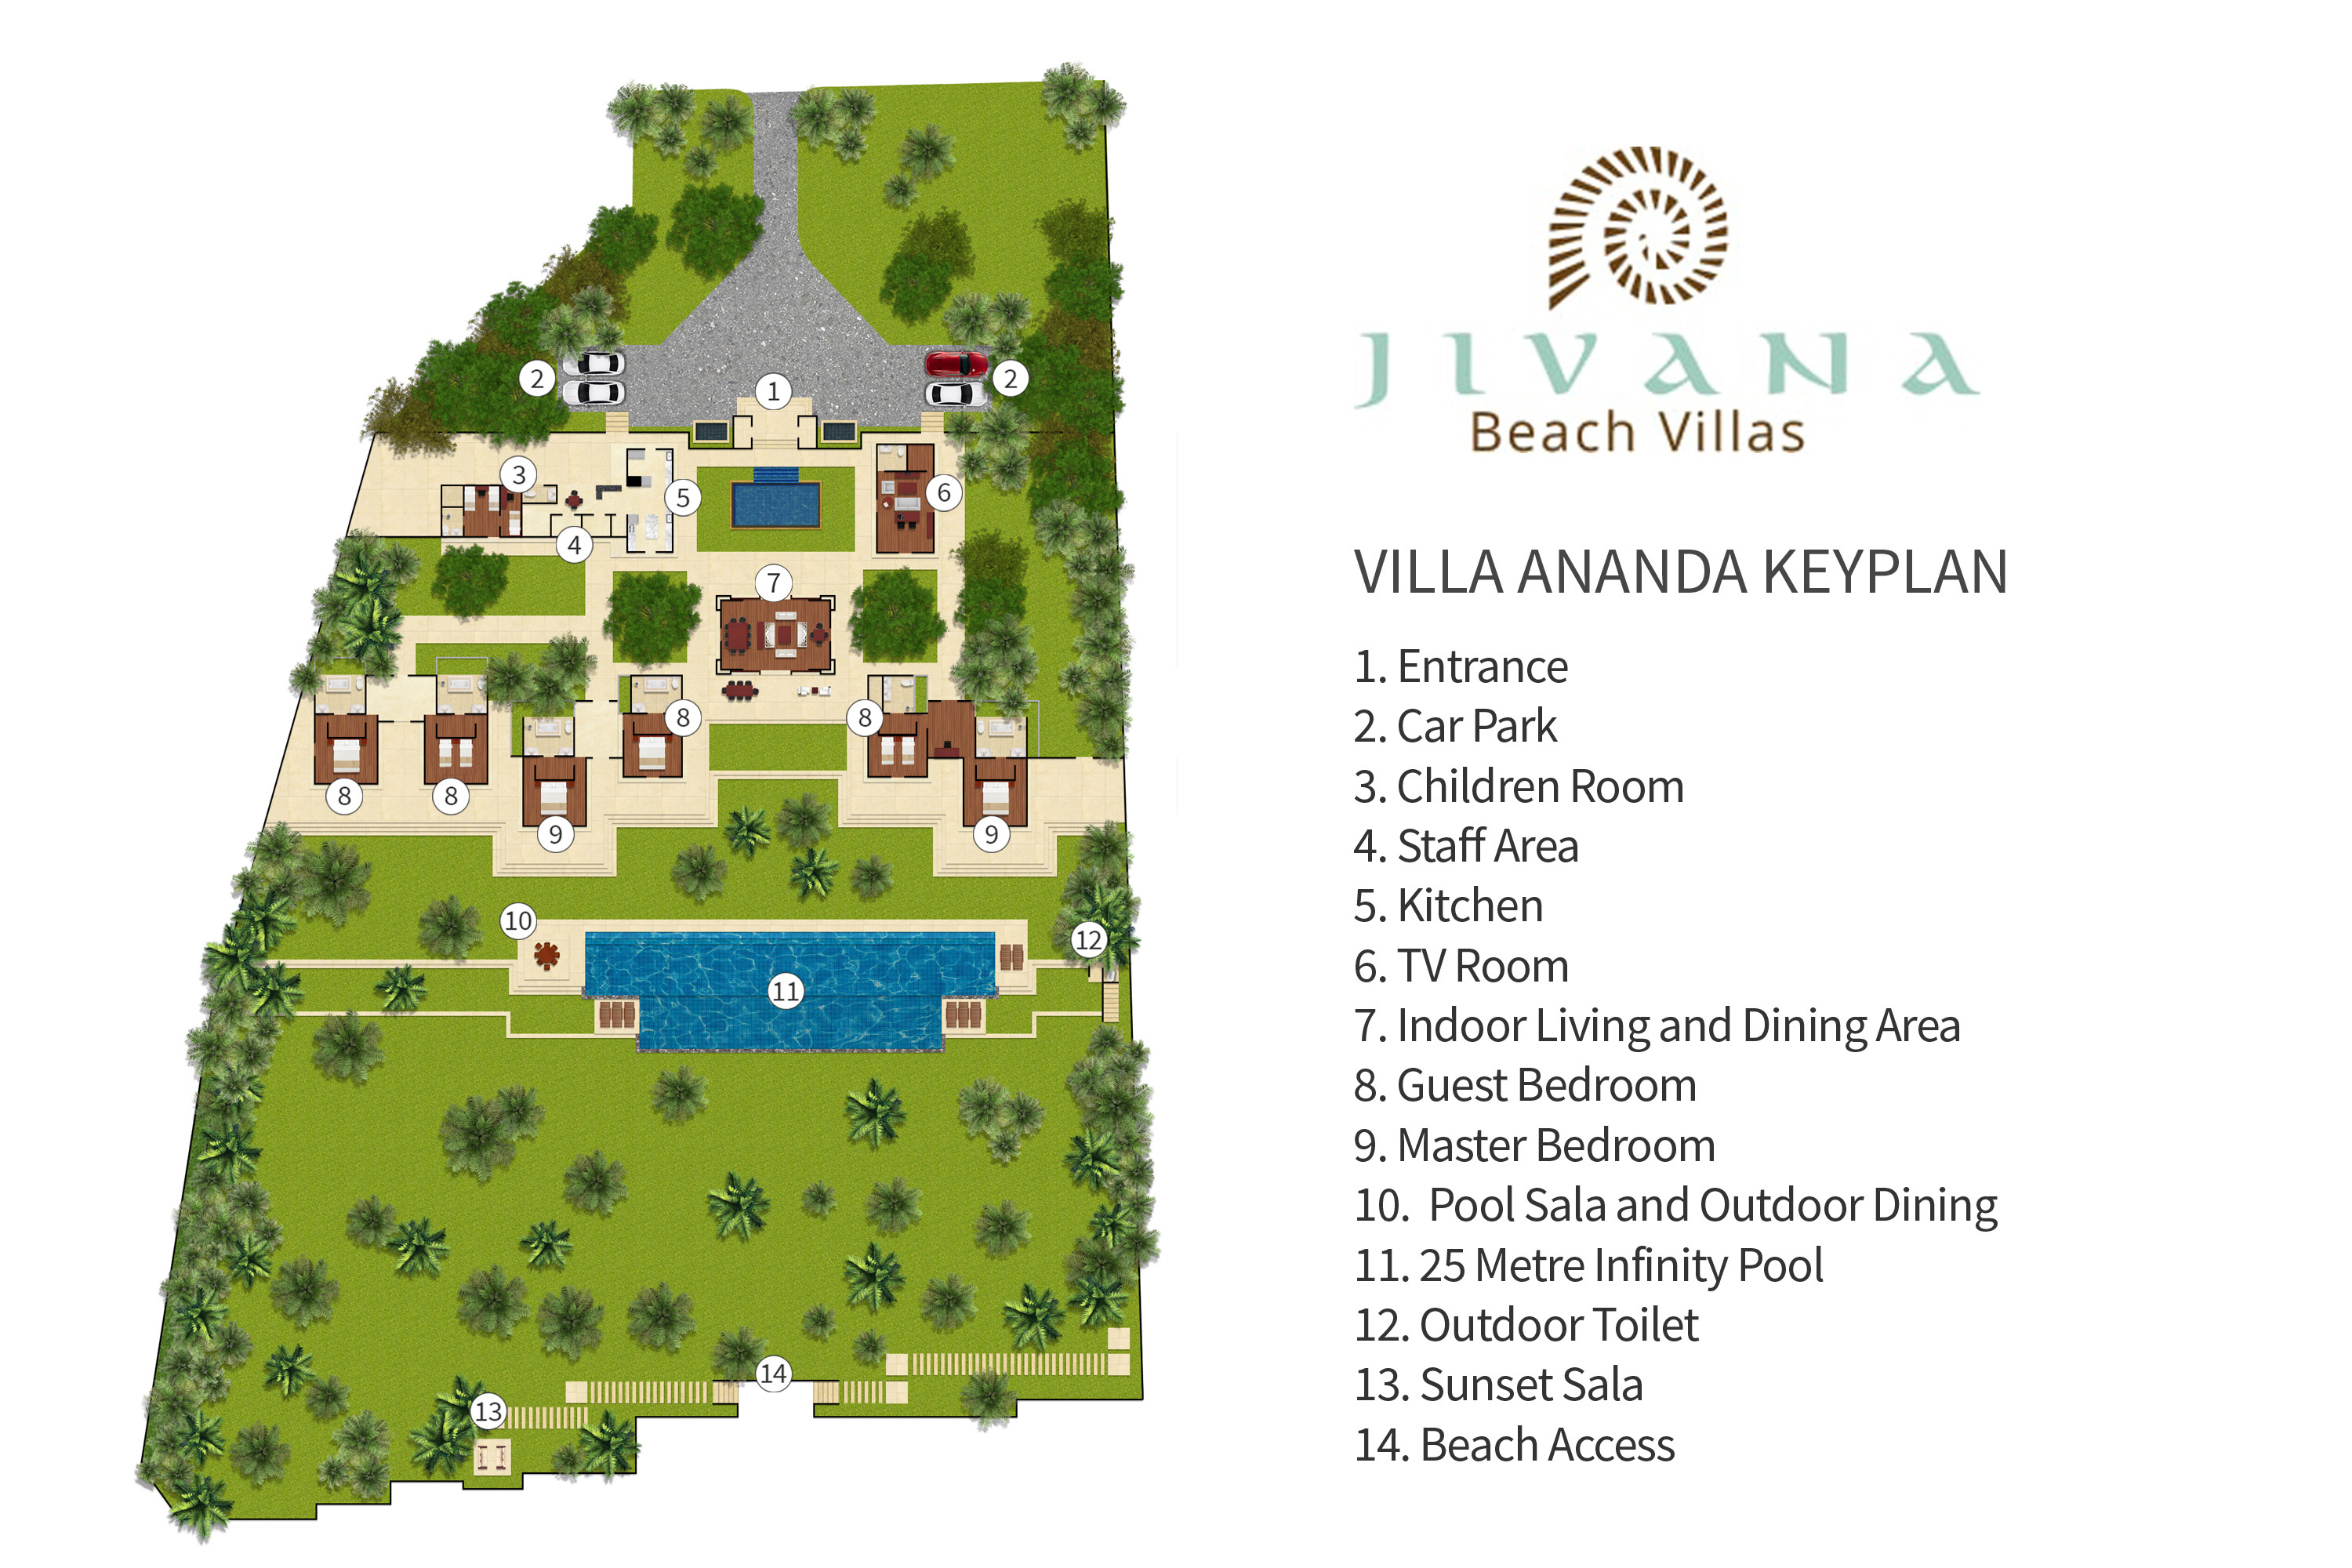 Jivana Beach Villas - Villa Ananda - Floorplan